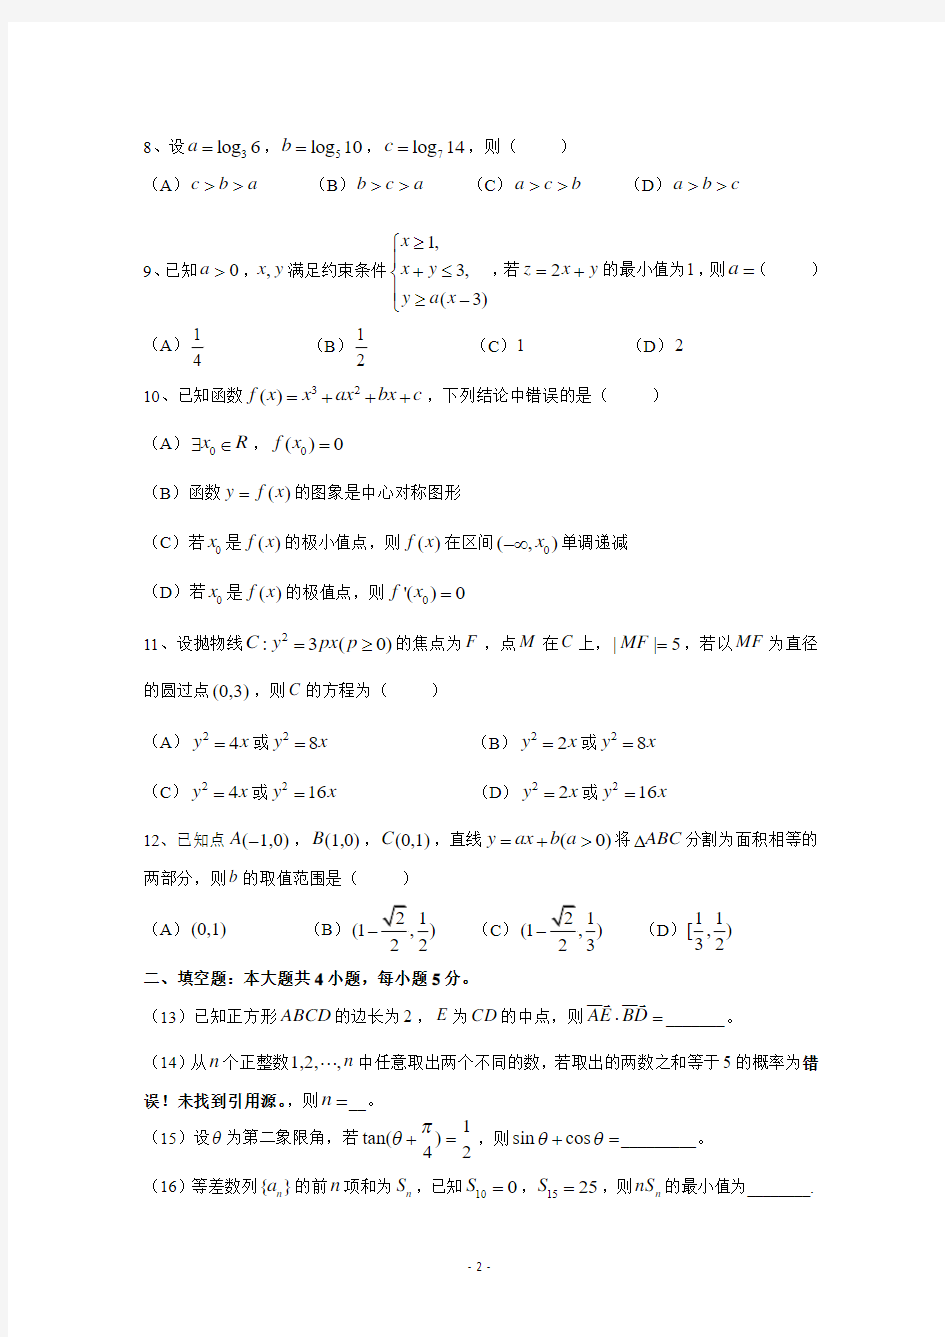 2013年高考真题——理科数学(新课标II卷)